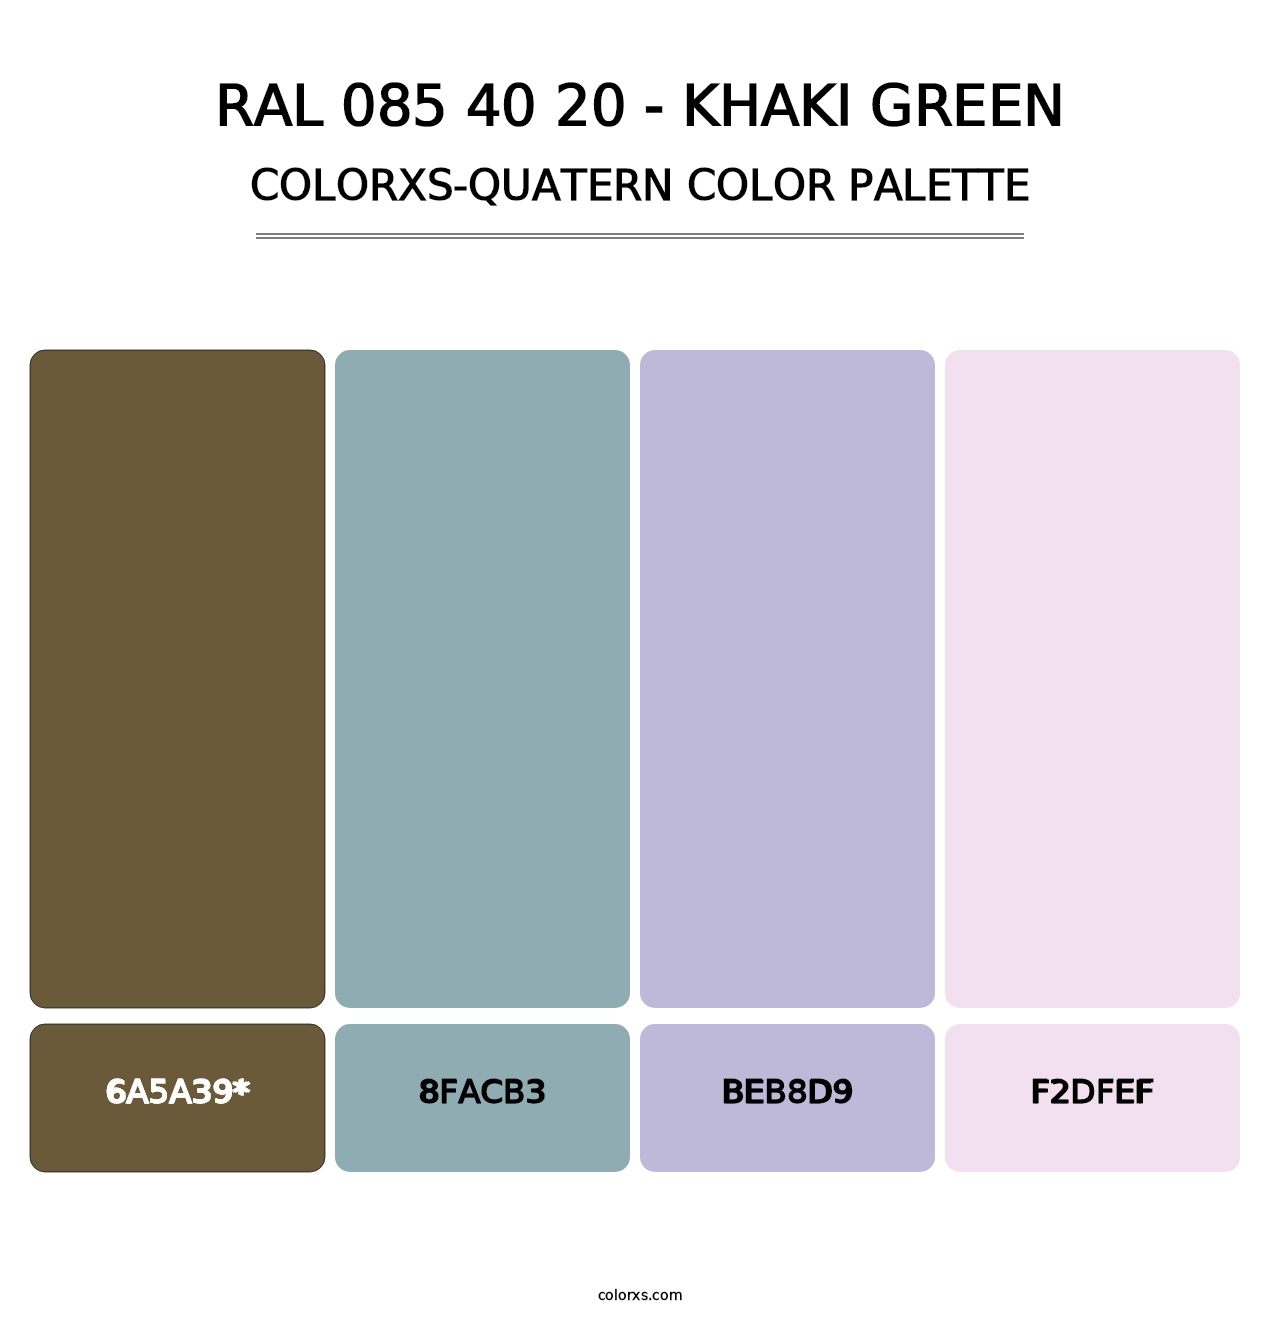 RAL 085 40 20 - Khaki Green - Colorxs Quatern Palette